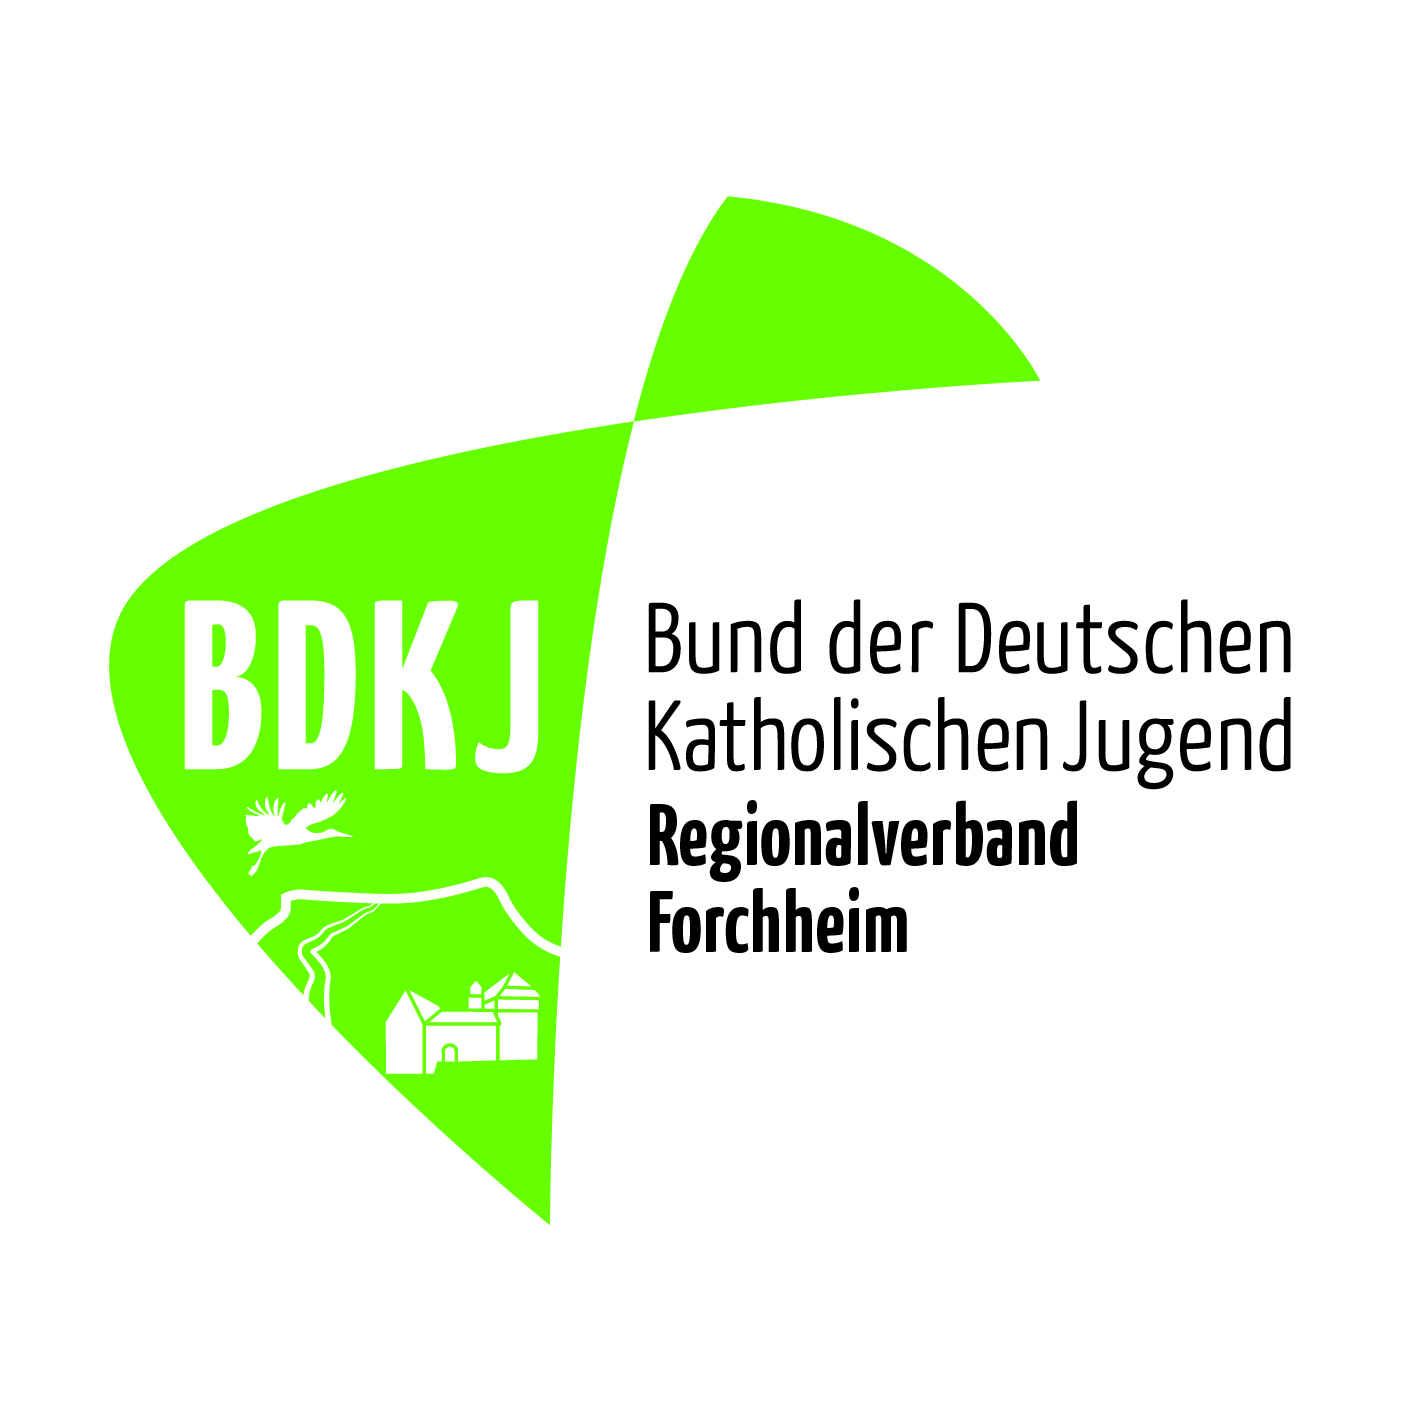 BDKJ_Forchheim